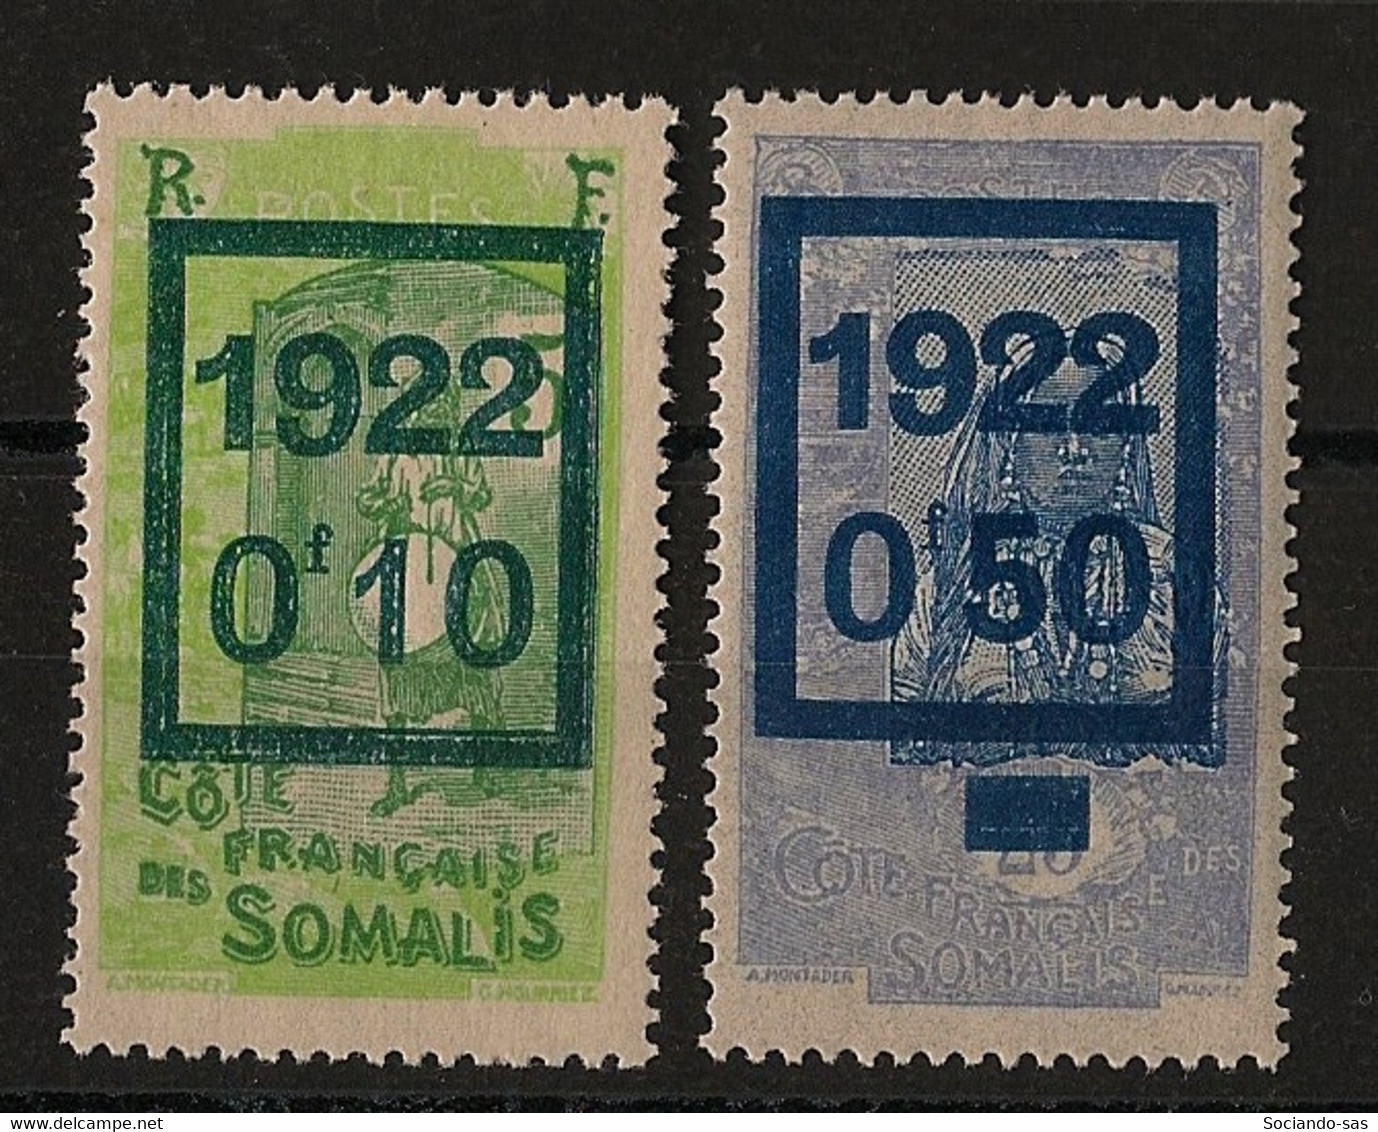 COTE DES SOMALIS - 1922 - N°YT. 101 à 102 - Série Complète - Neuf * / MH VF - Nuovi